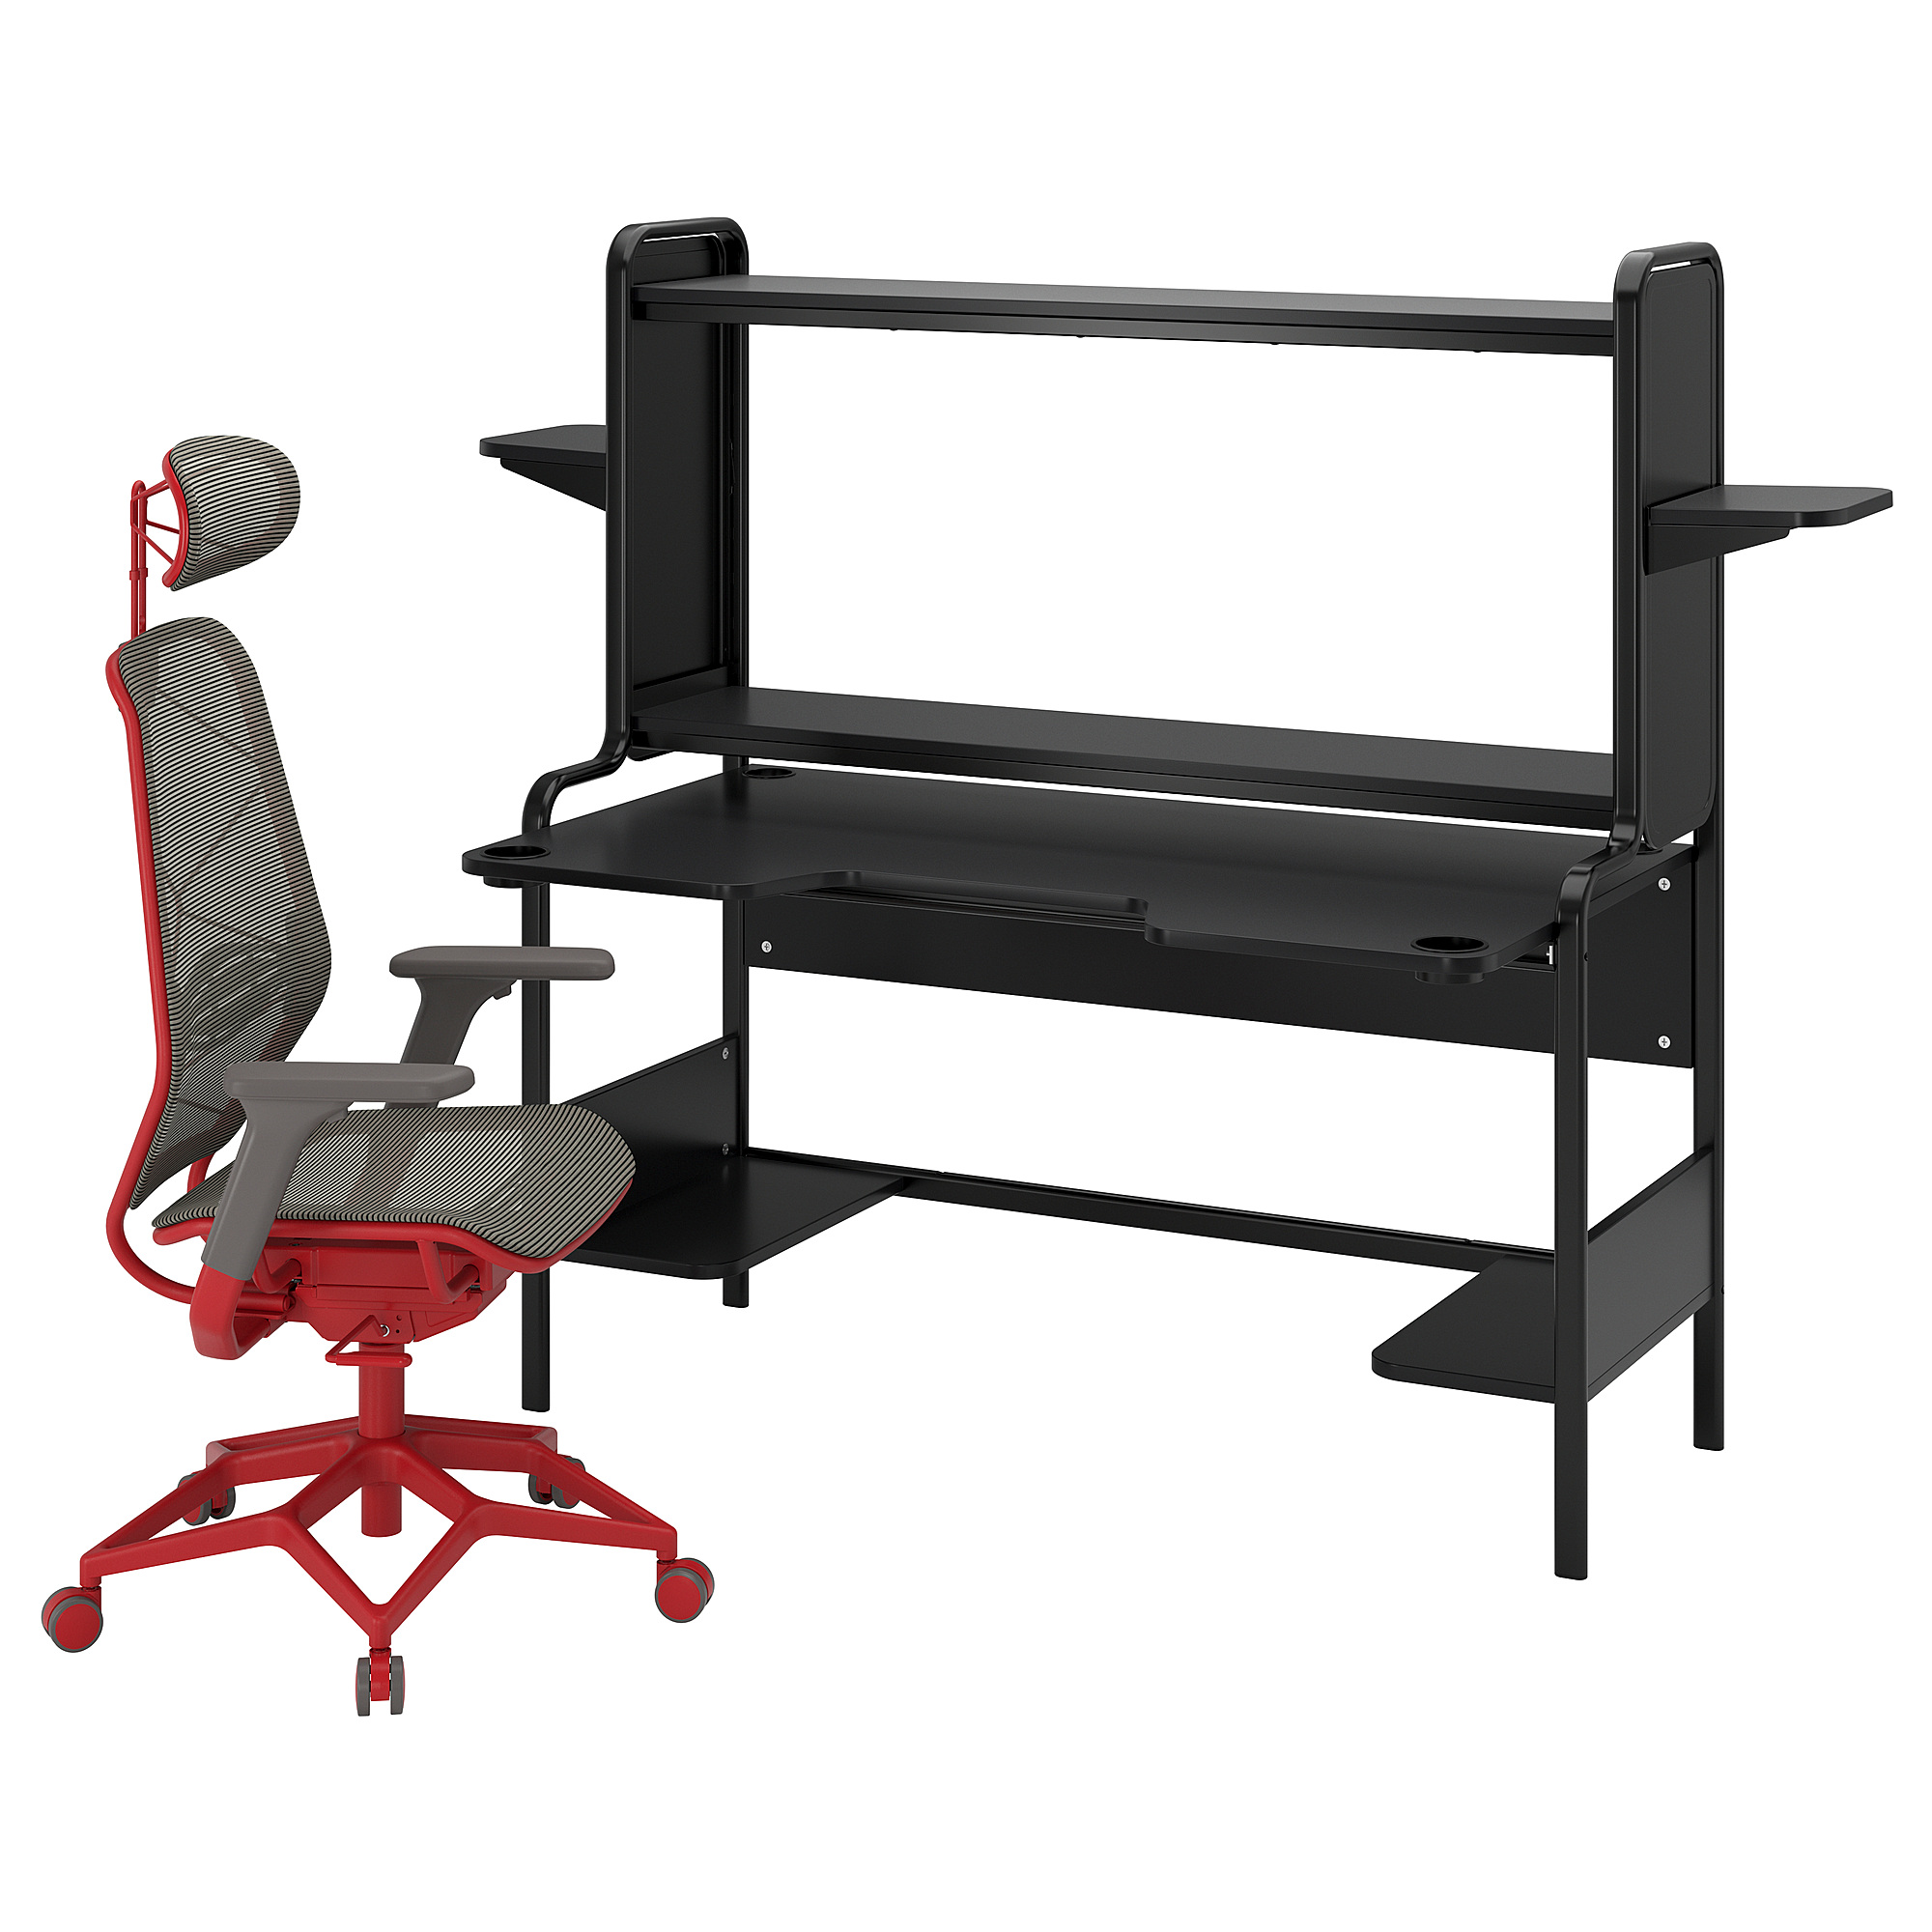 FREDDE/STYRSPEL gaming desk and chair